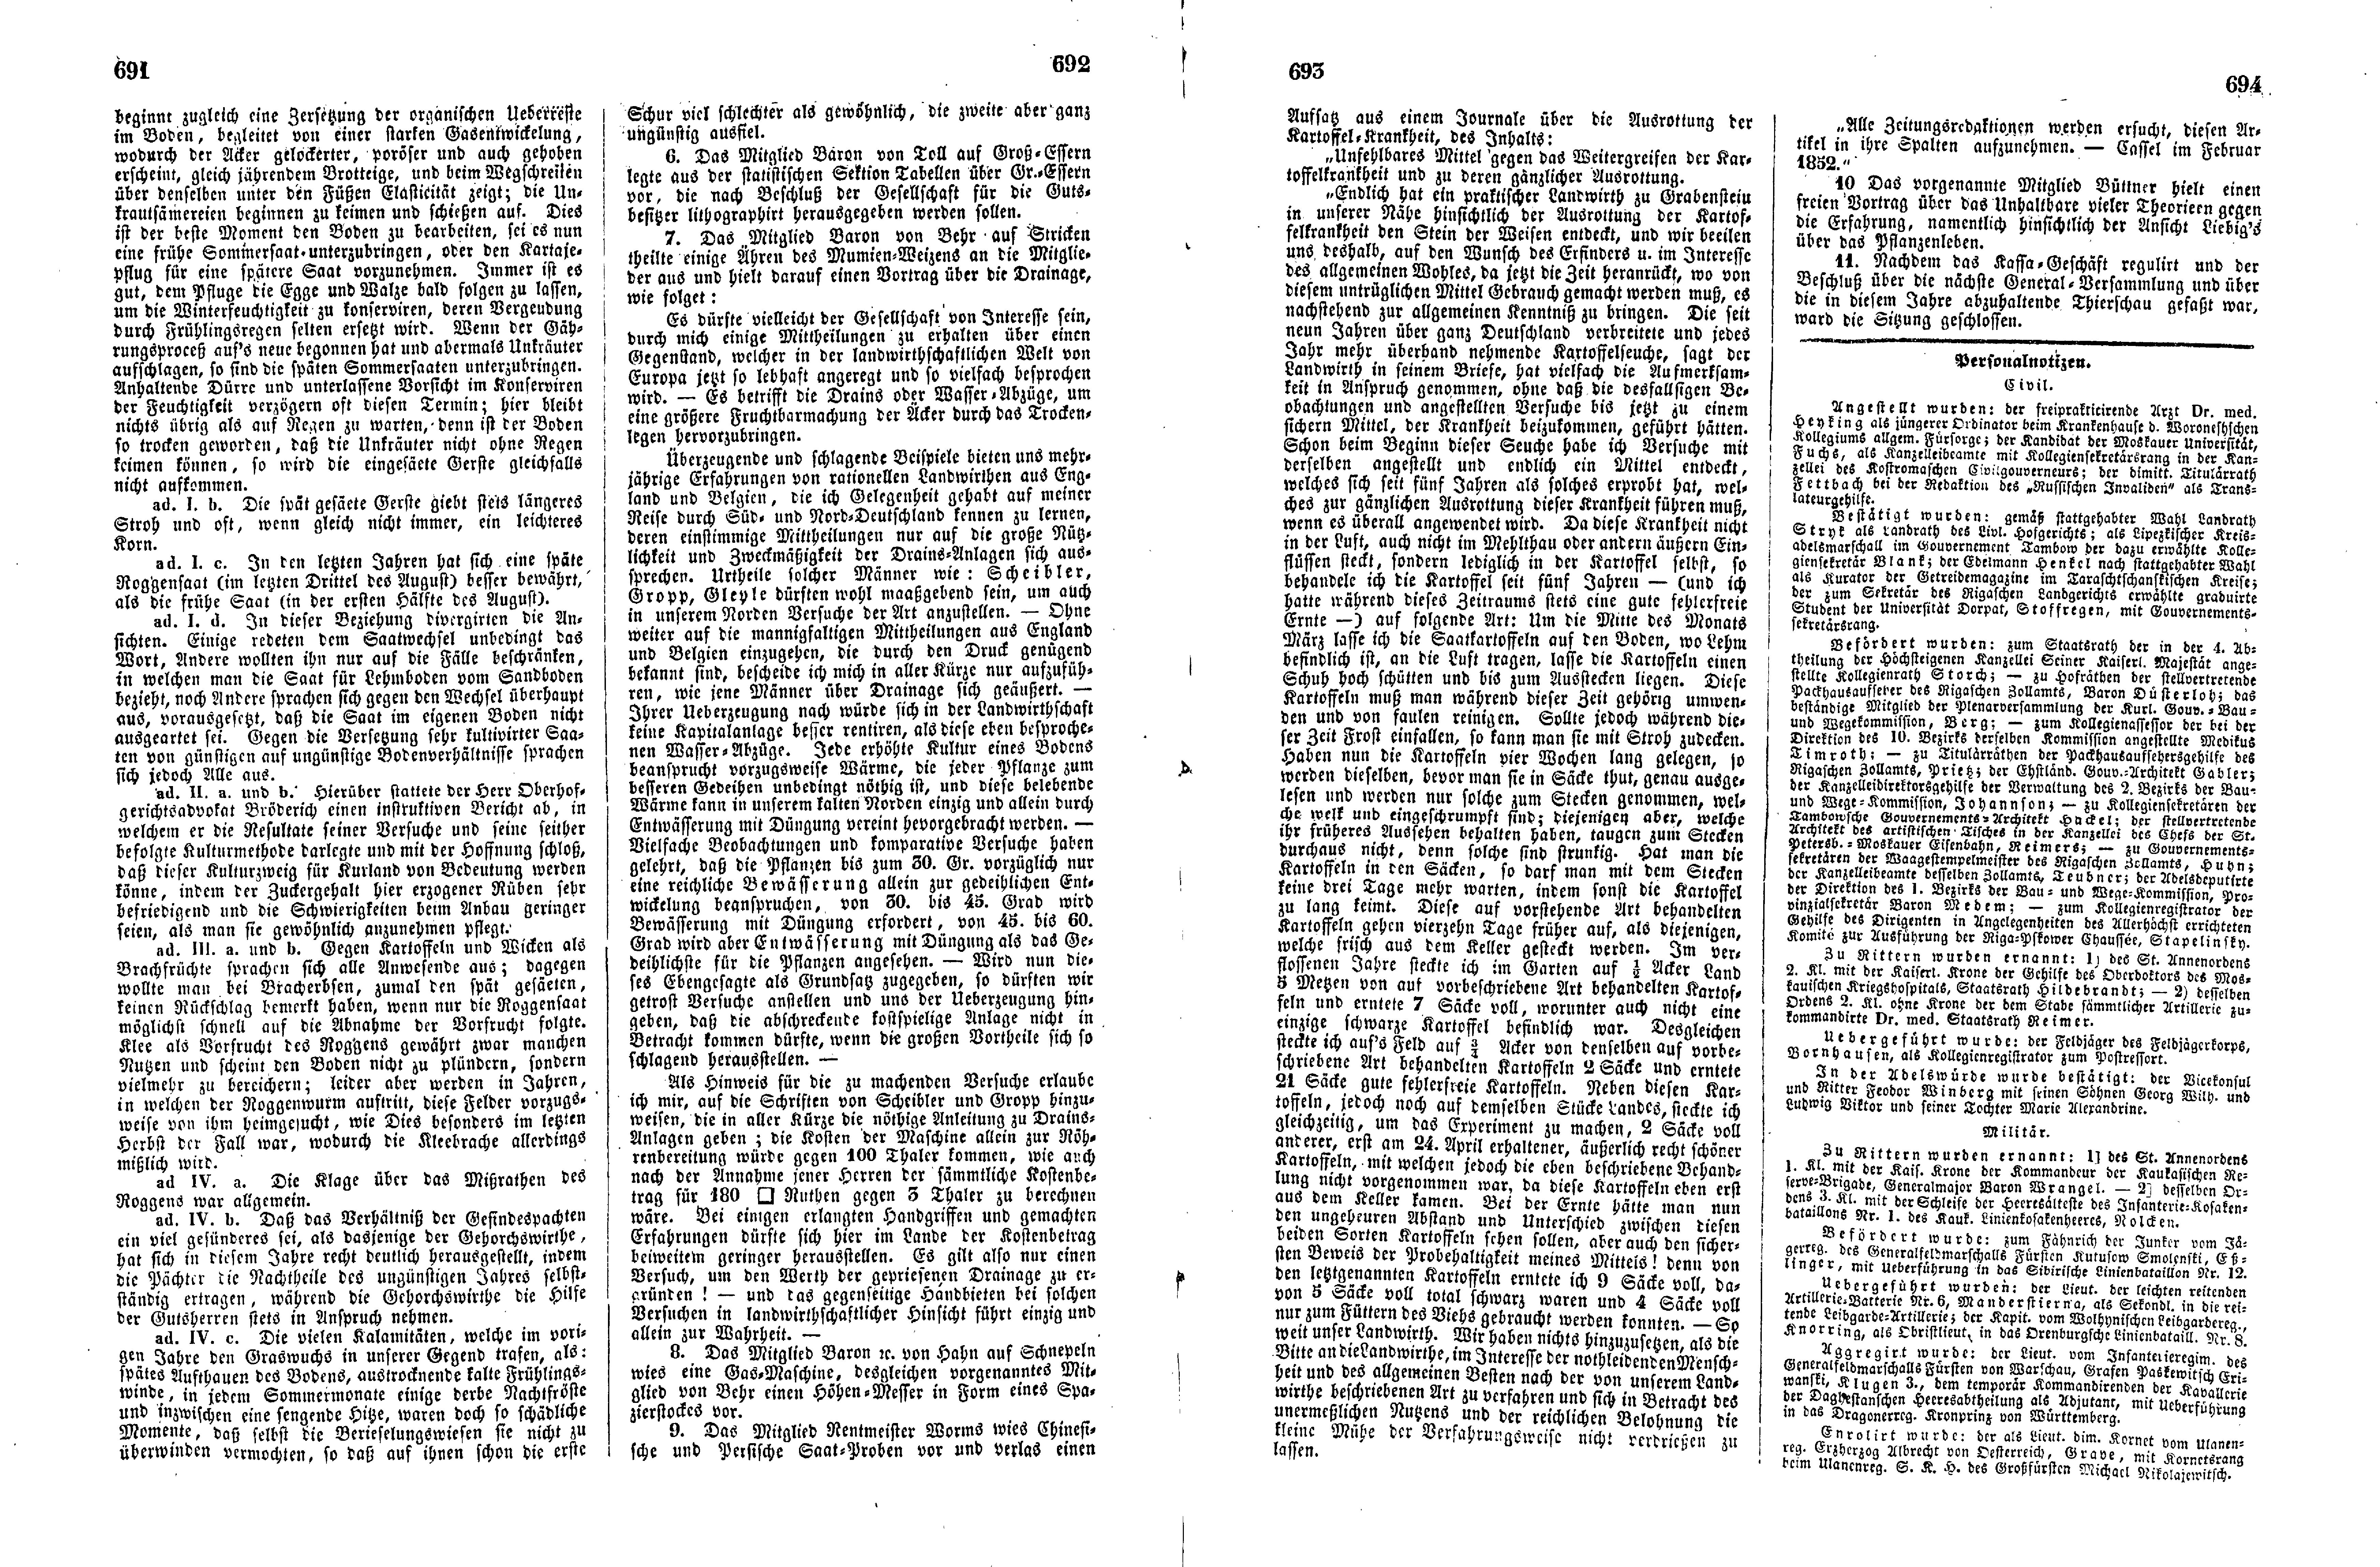 Das Inland [17] (1852) | 178. (691-694) Основной текст